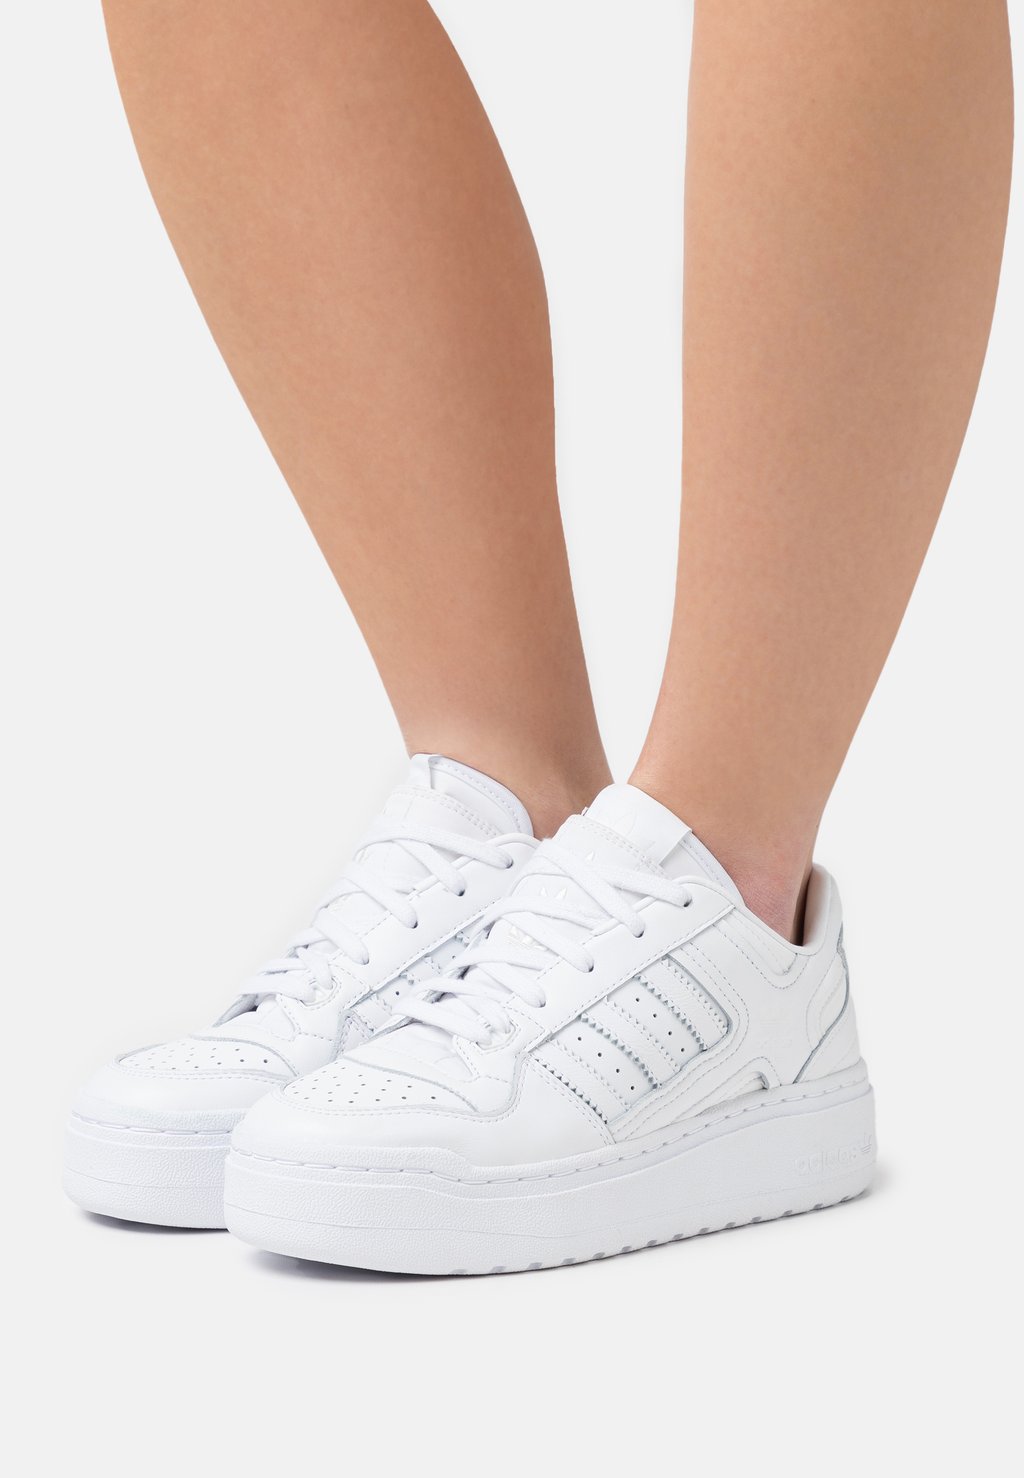 Кроссовки adidas Originals Forum Xlg, обувь белый / кристально-белый кроссовки adidas originals ozweego unisex обувь белый кристально белый